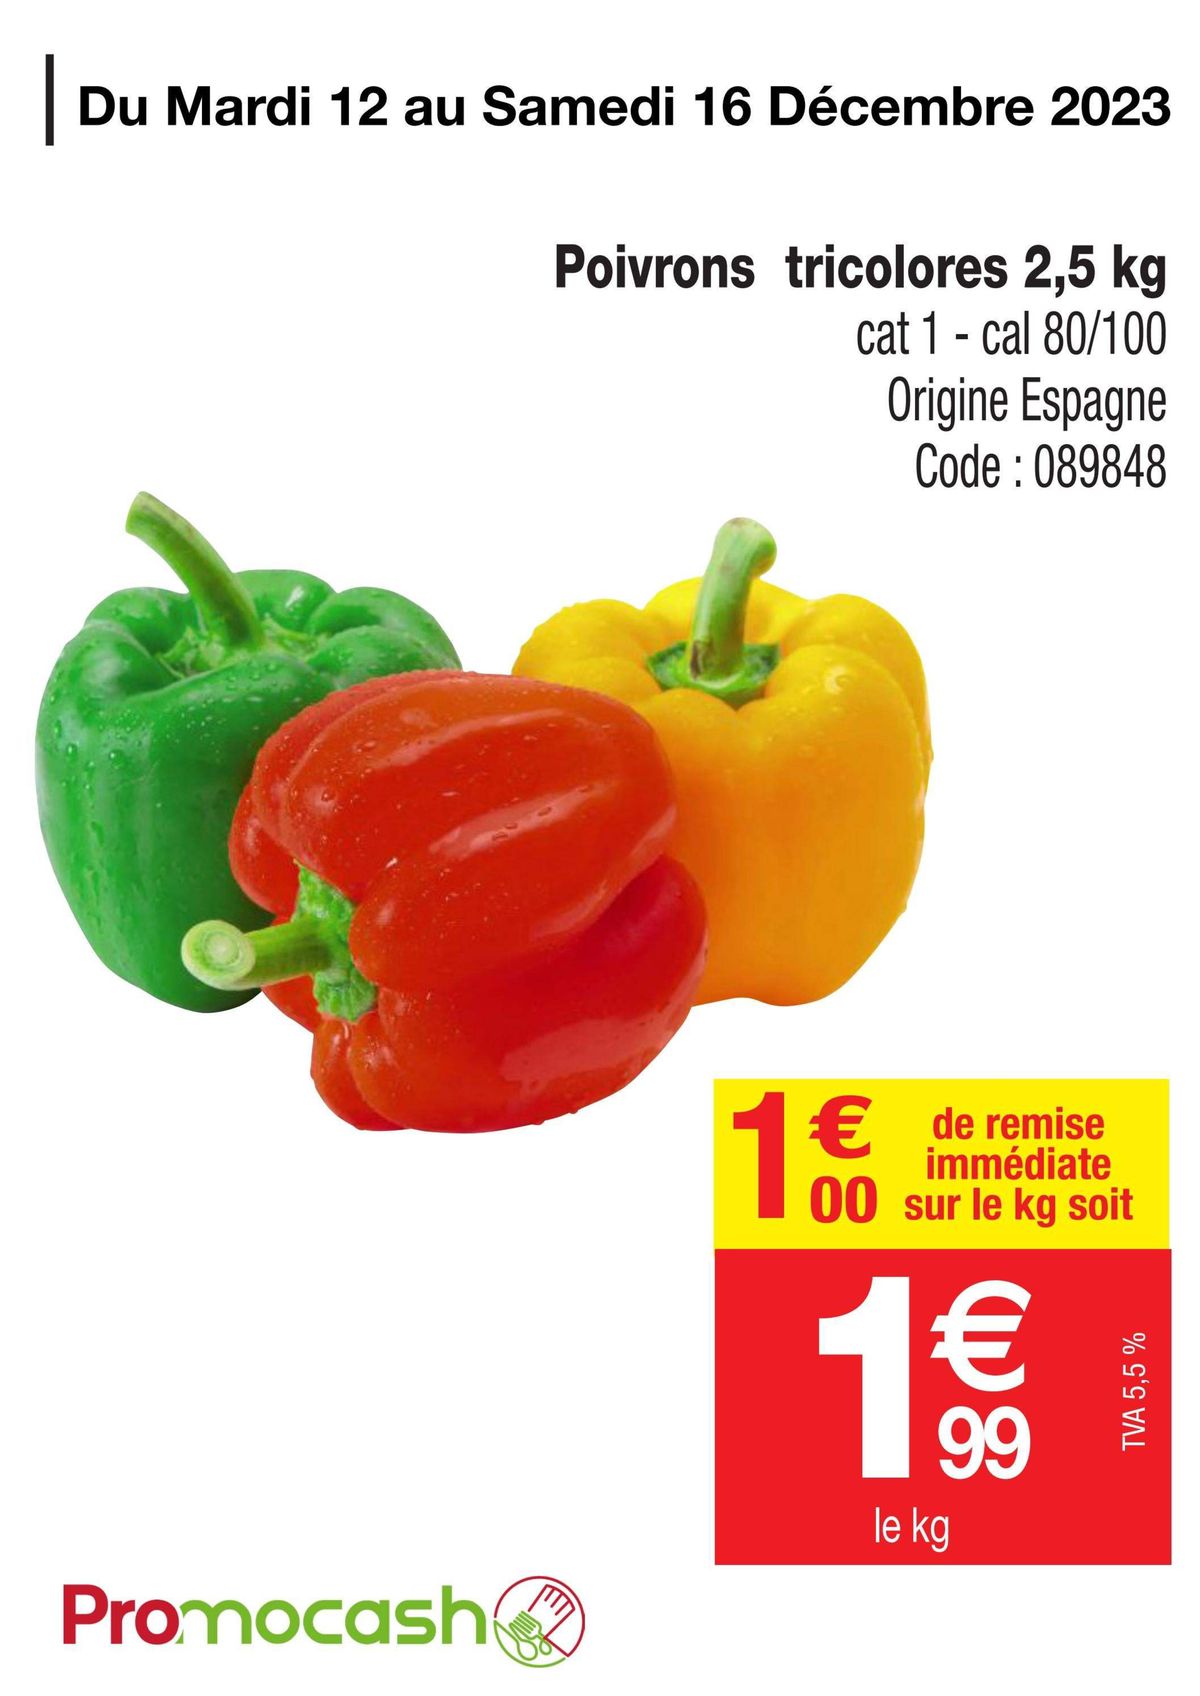 Catalogue Poivrons tricolores, page 00001